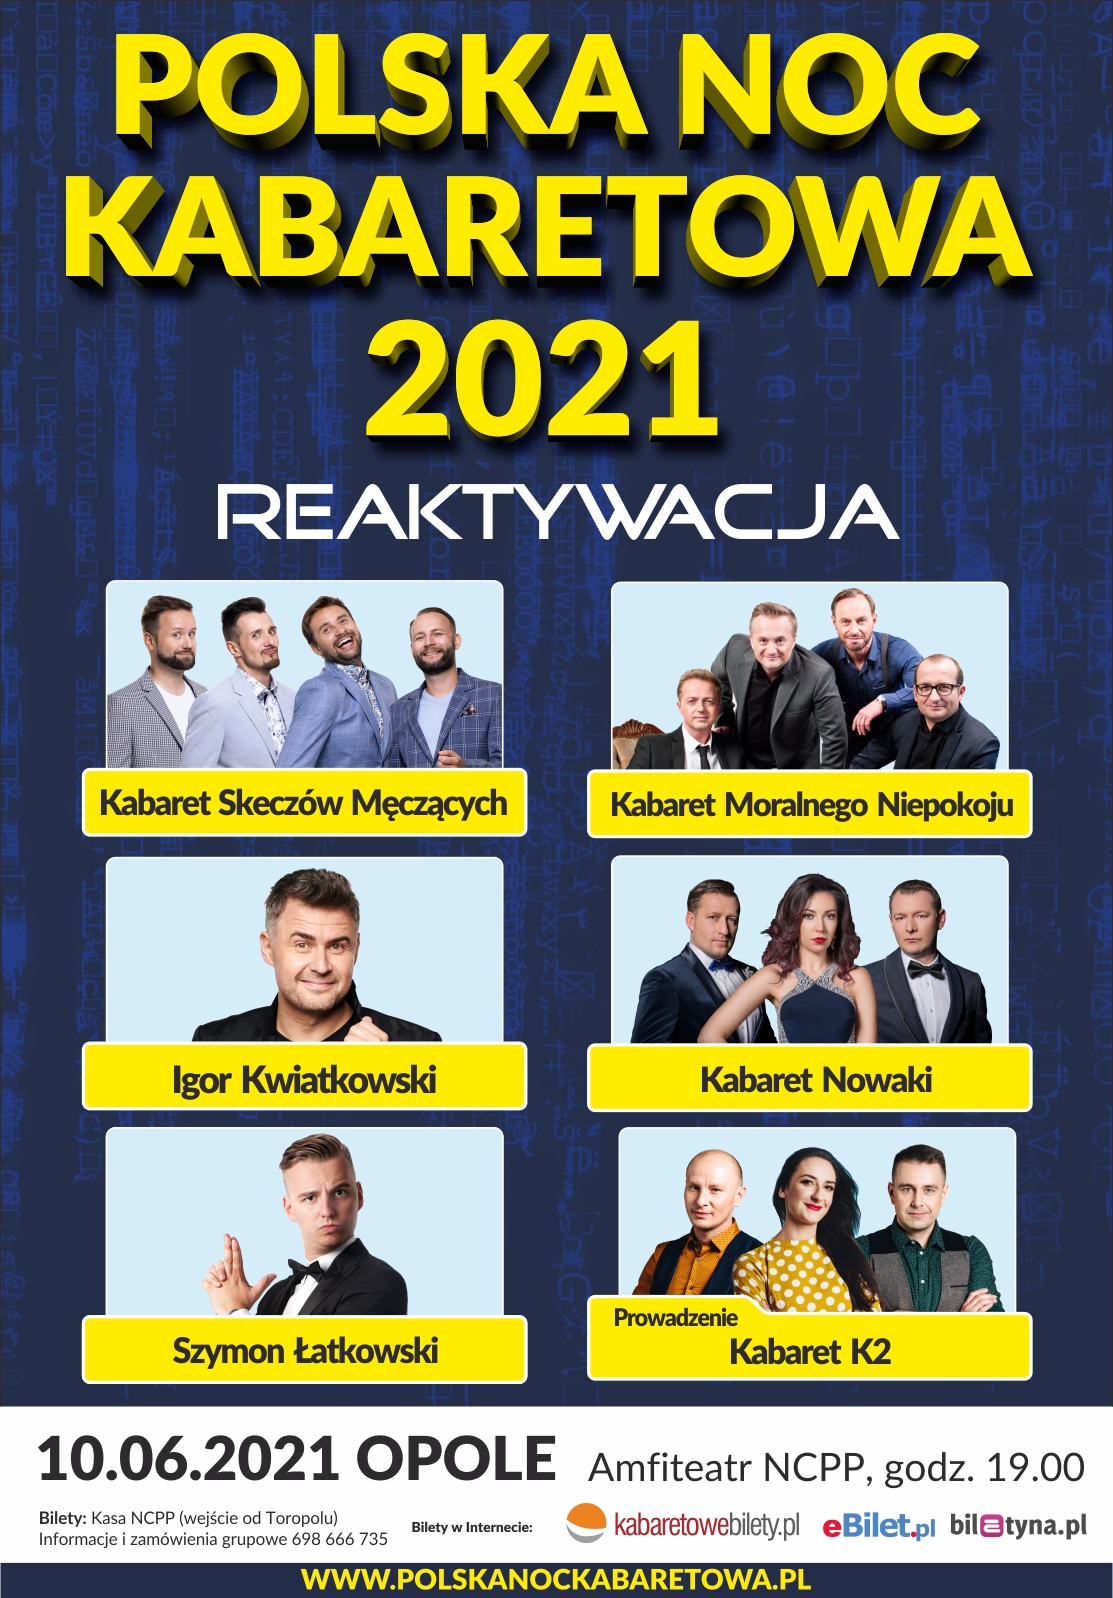 Polska Noc Kabaretowa 2021 Reaktywacja już jutro w Opolu